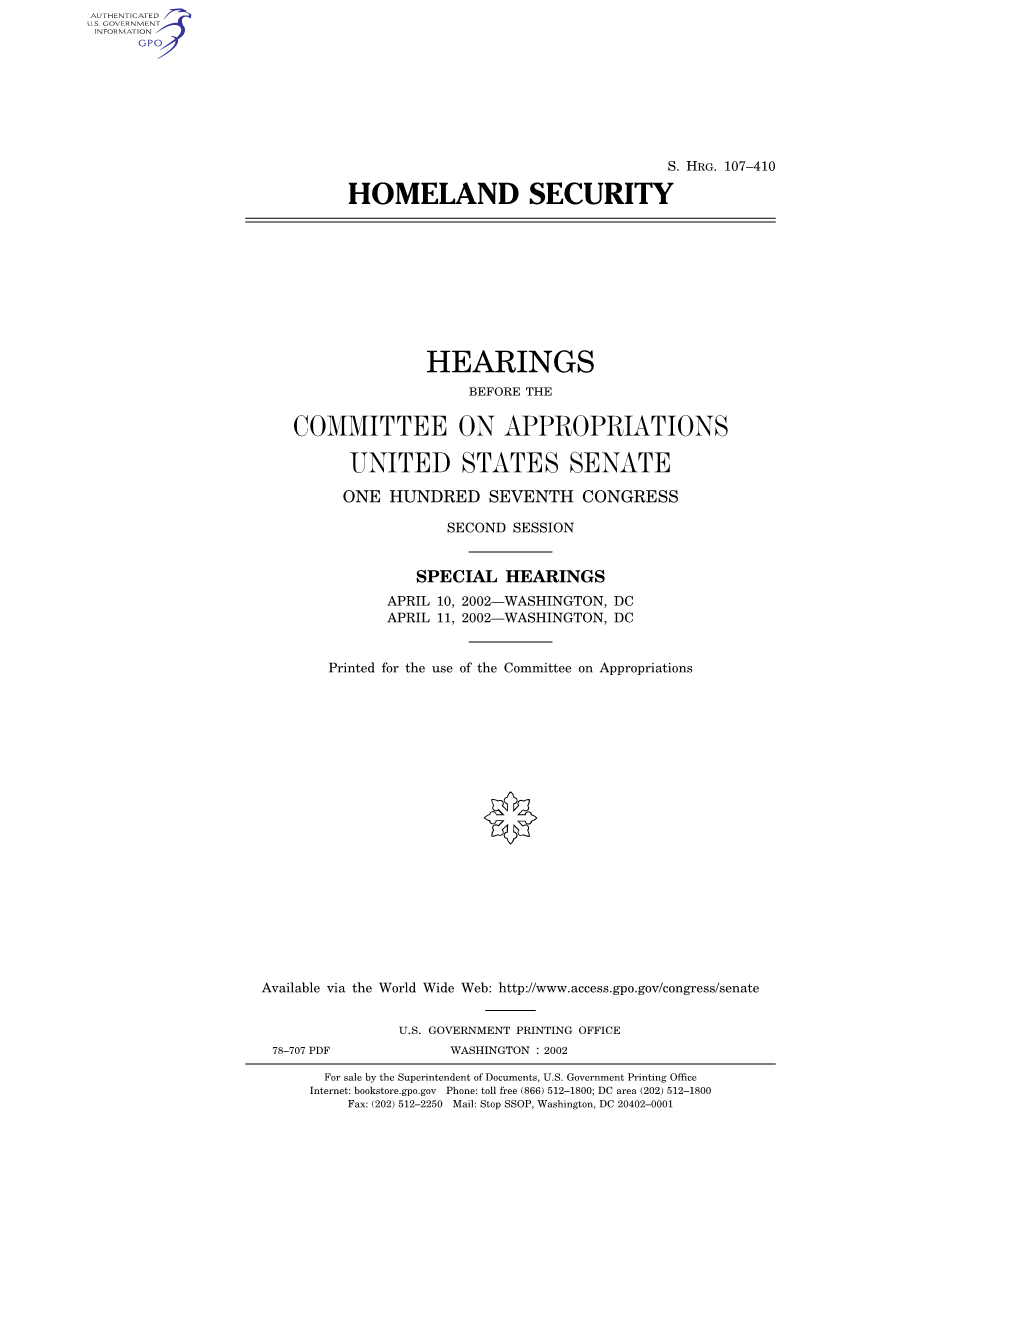 Homeland Security Hearings Committee On